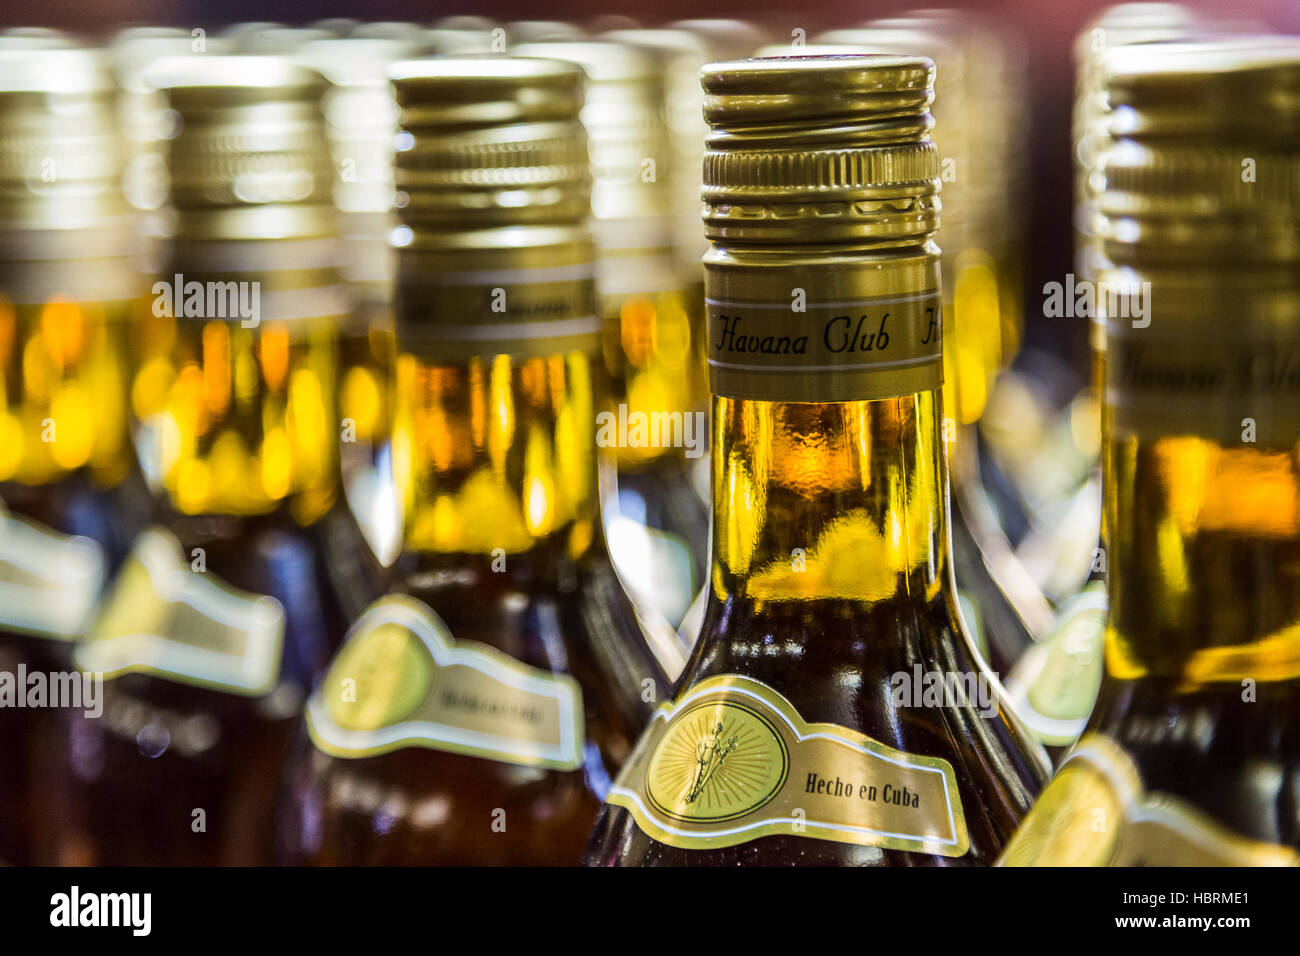 Nahaufnahme der Flaschen Havana Club Rum positioniert auf eine Bar im Herzen von Havanna, Kuba. Stockfoto